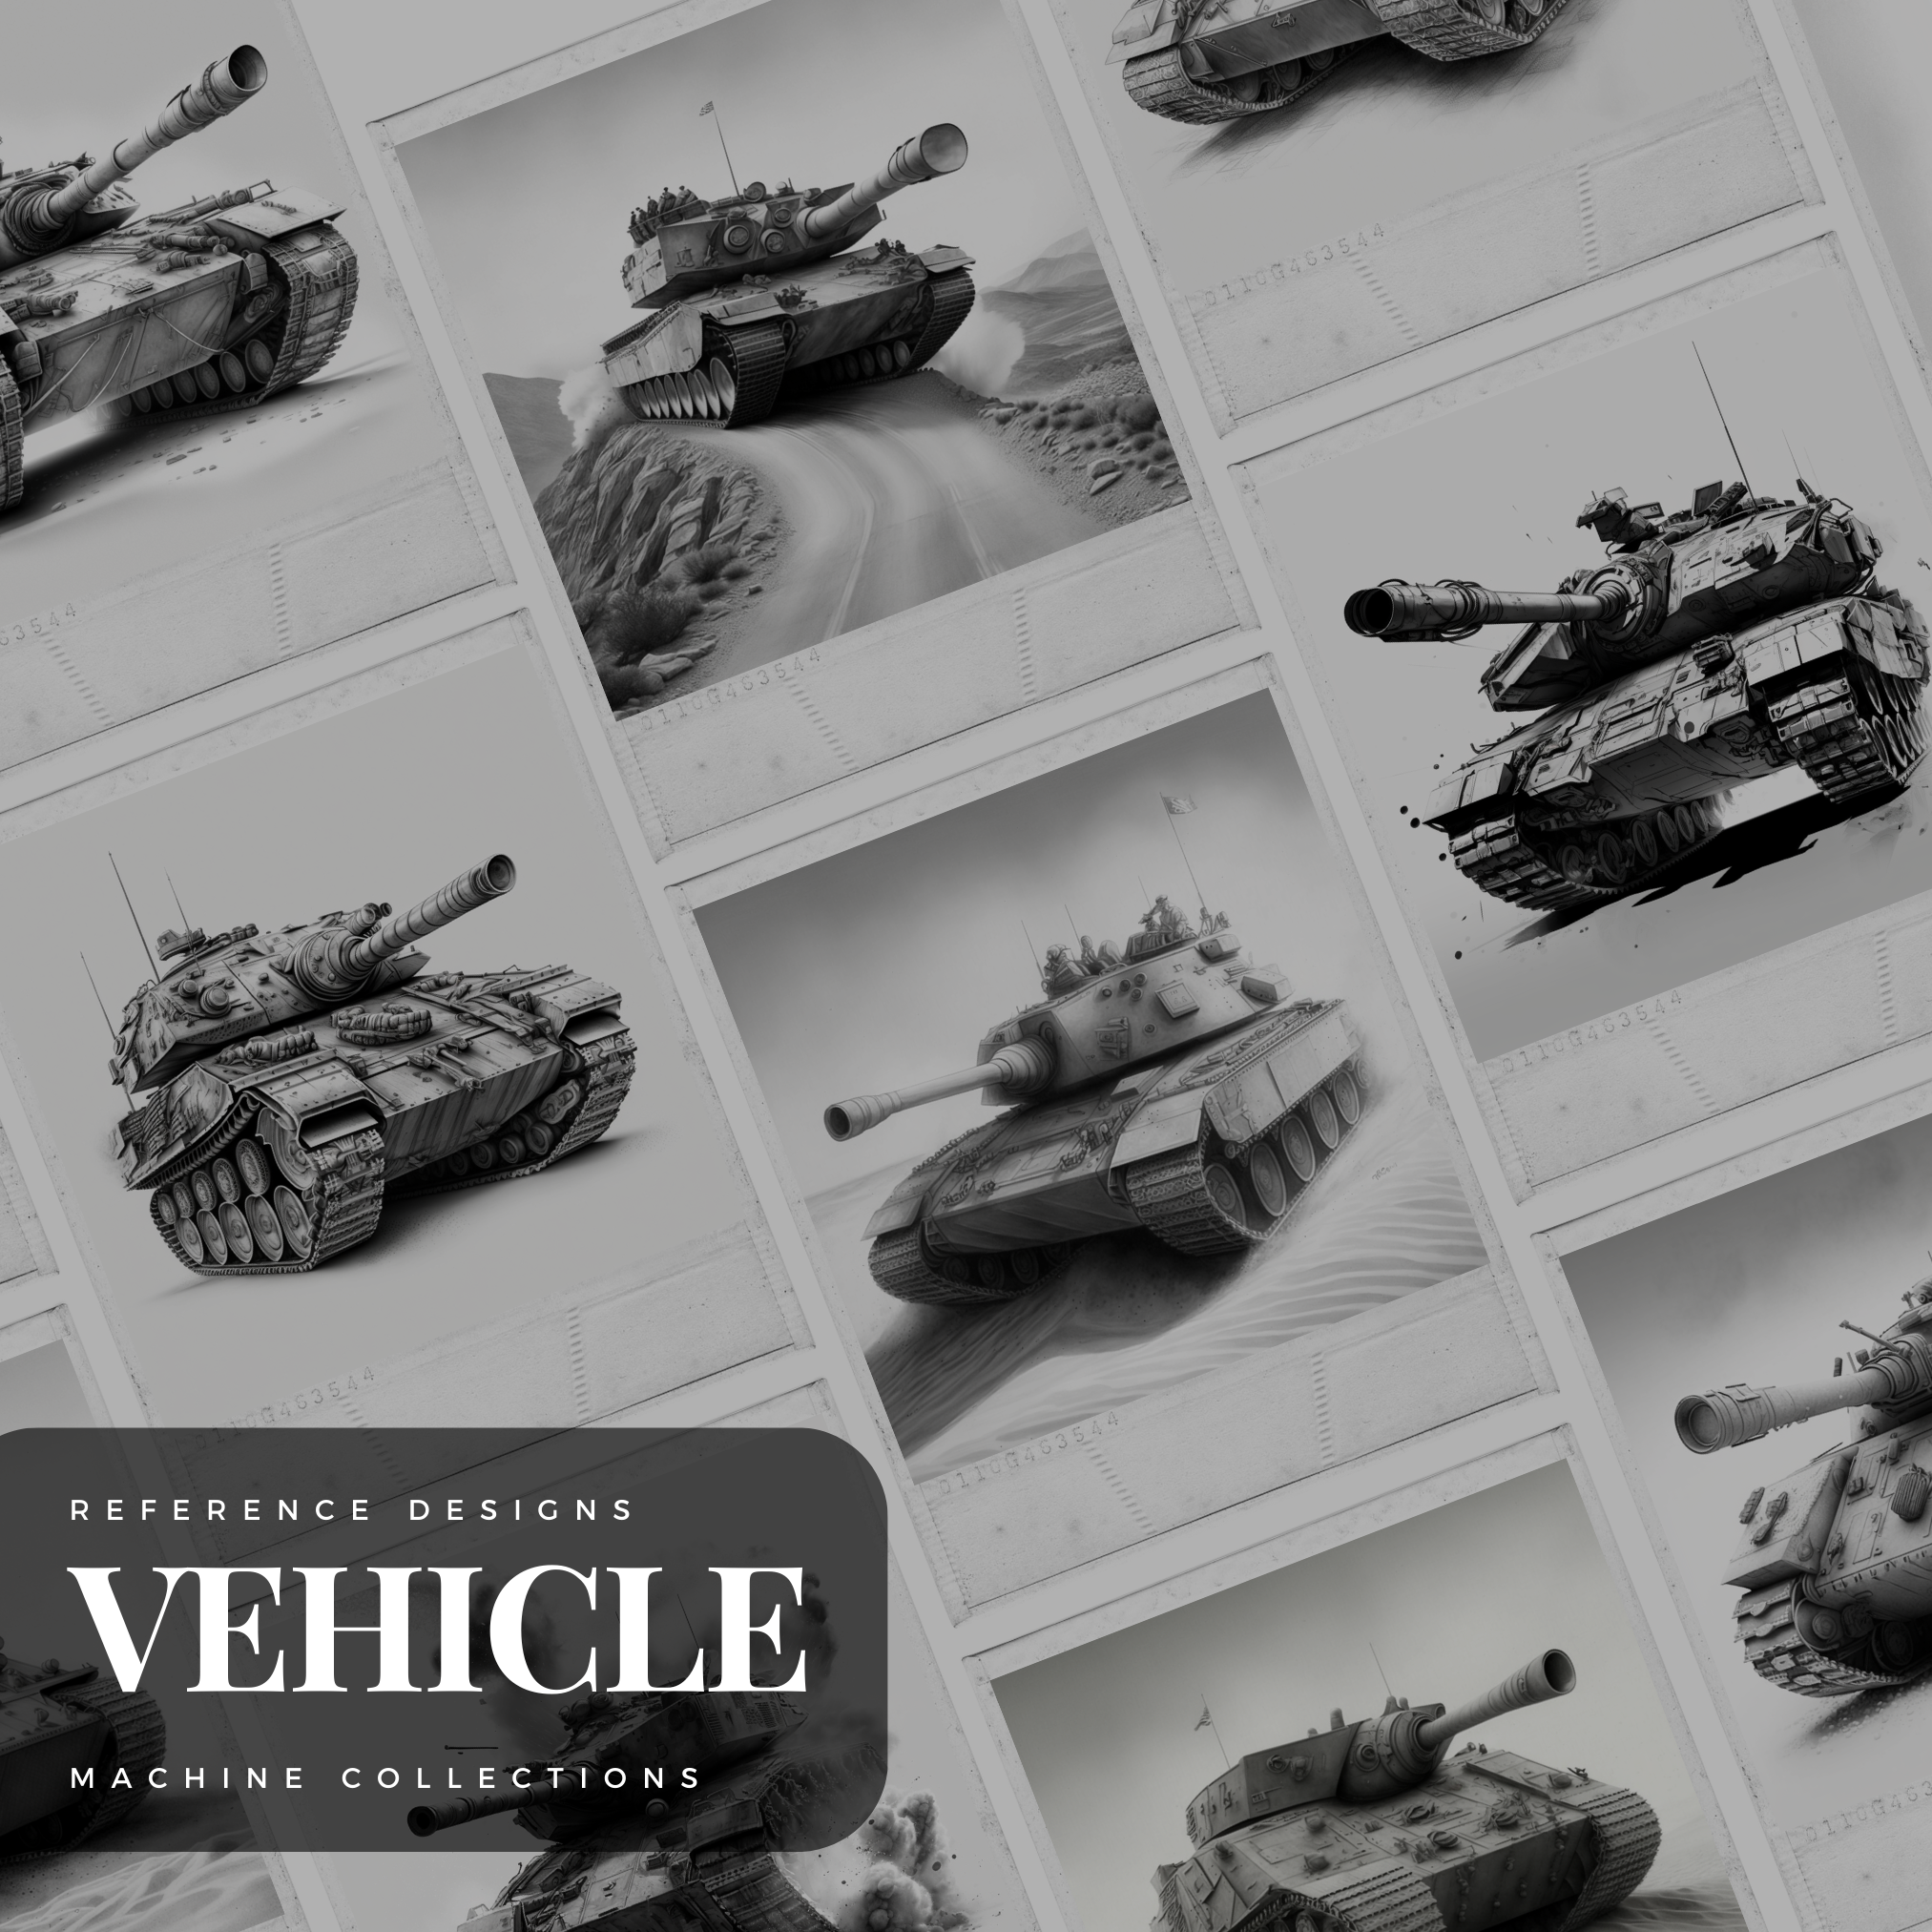 Tanks Digital Design Collection: 50 Procreate & Sketchbook Images